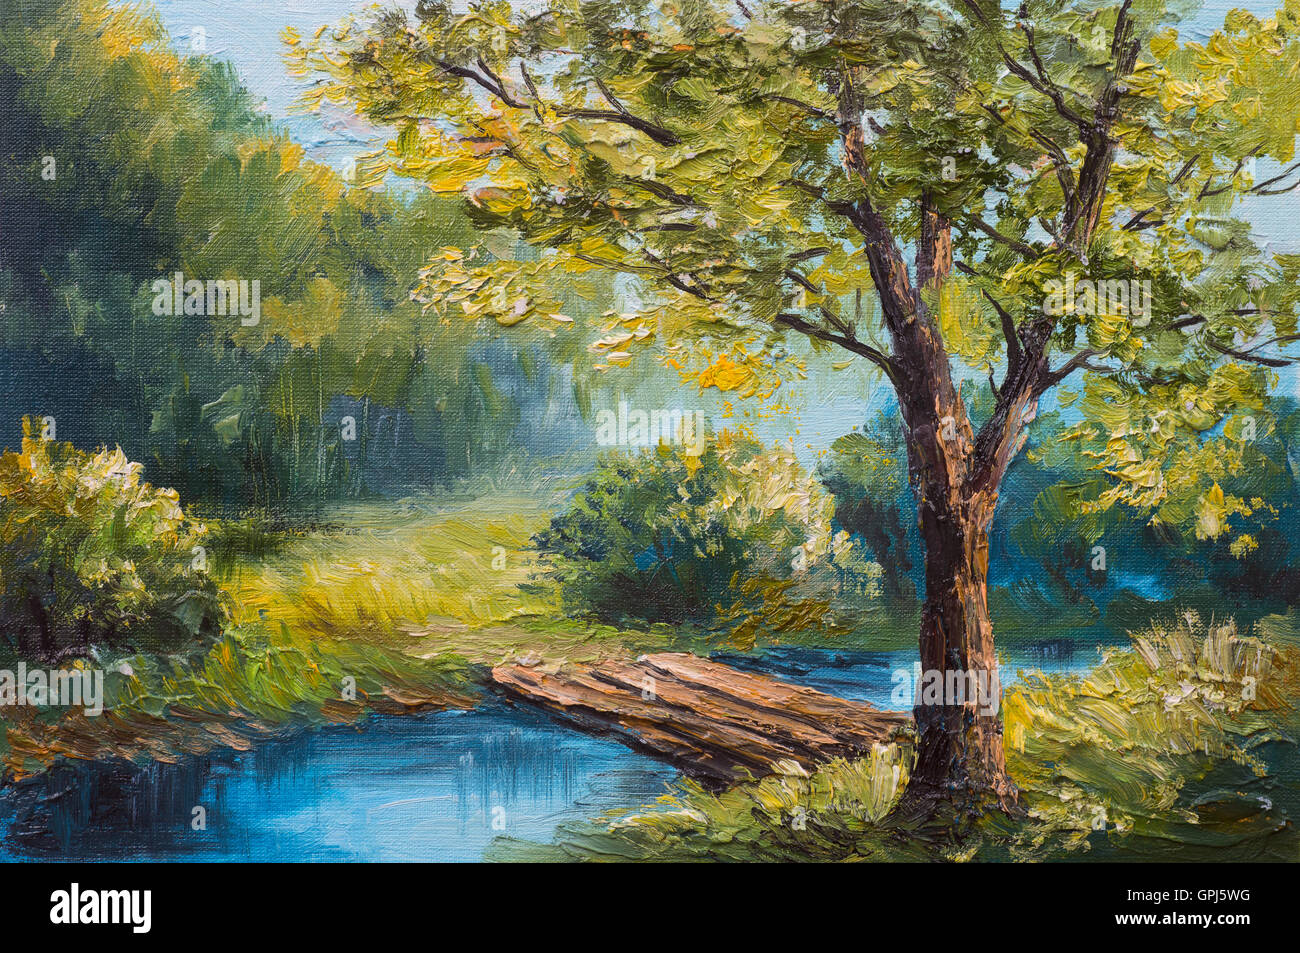 Peinture à l'huile - paysage de forêt d'été coloré, belle rivière Banque D'Images